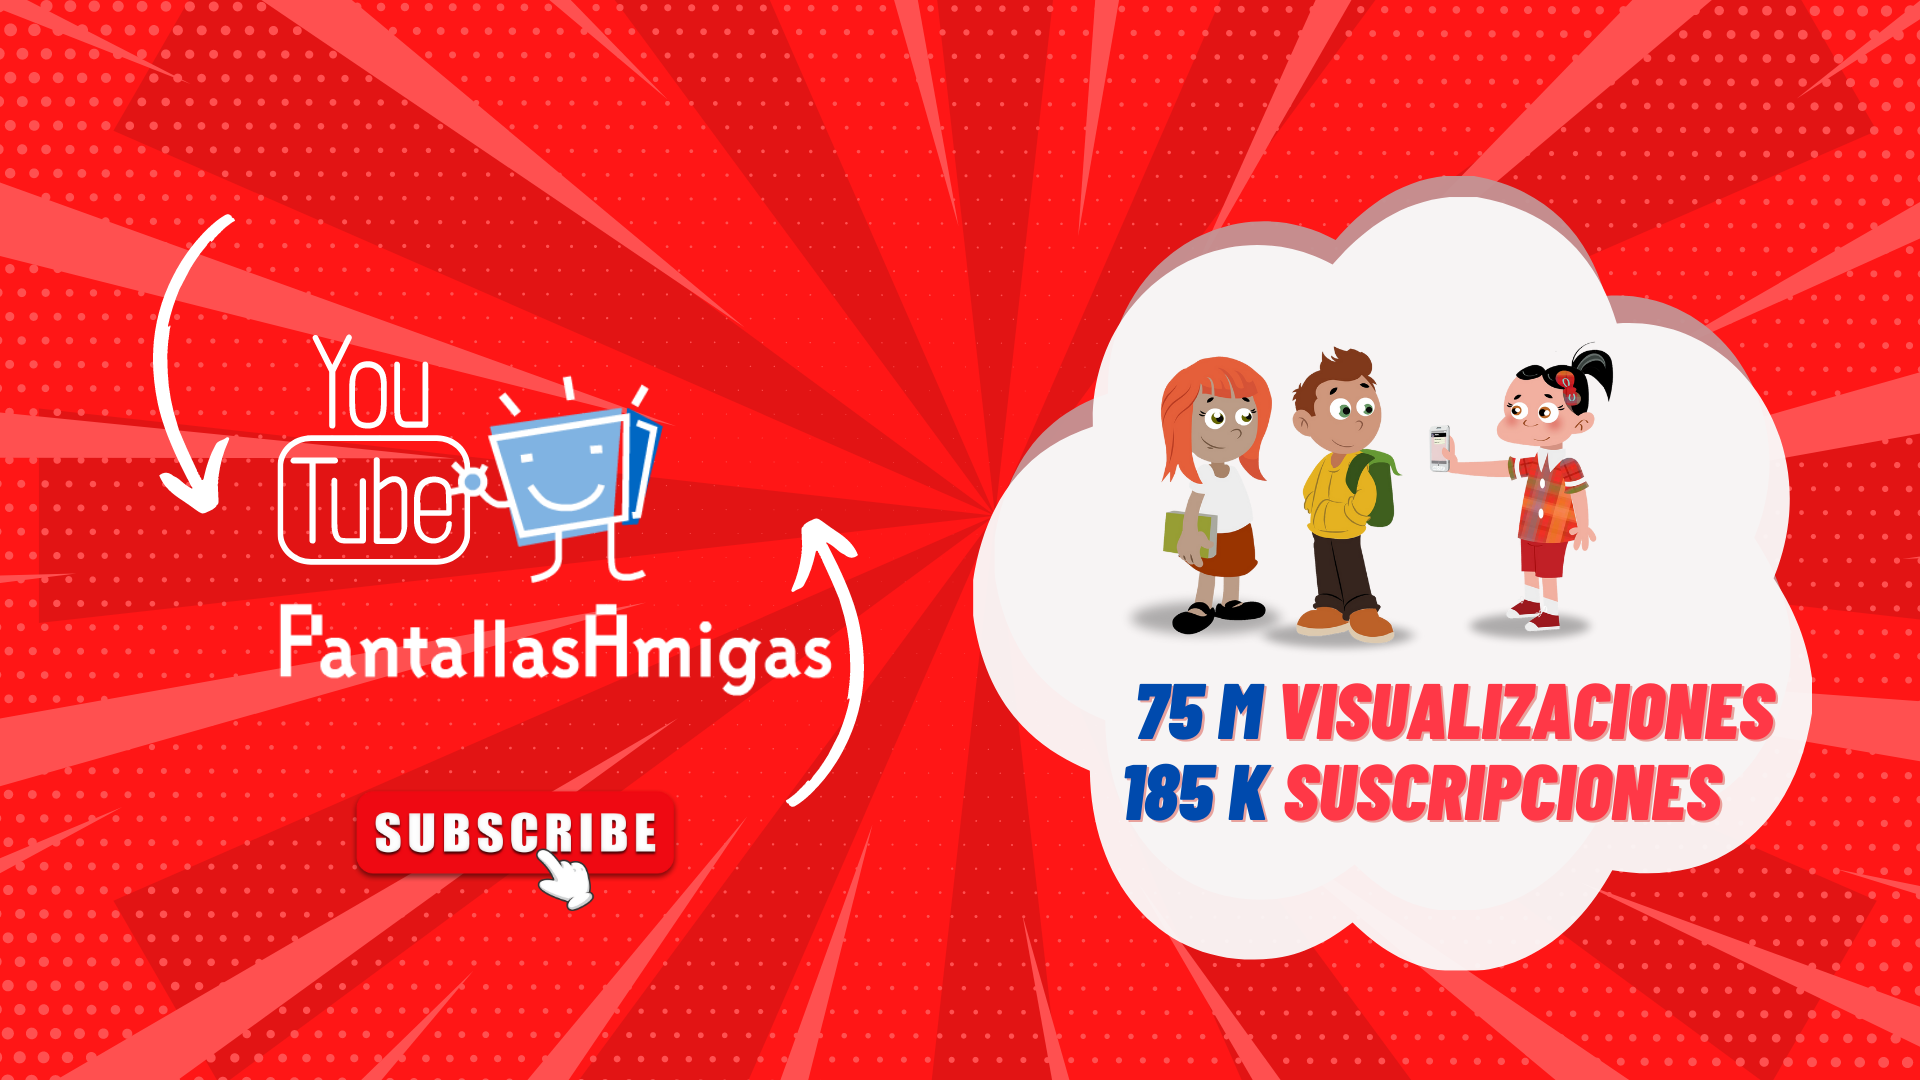 El canal de YouTube de PantallasAmigas supera las 75 Millones - El canal de YouTube de PantallasAmigas supera las 75 Millones de visualizaciones y las 185 K suscripciones